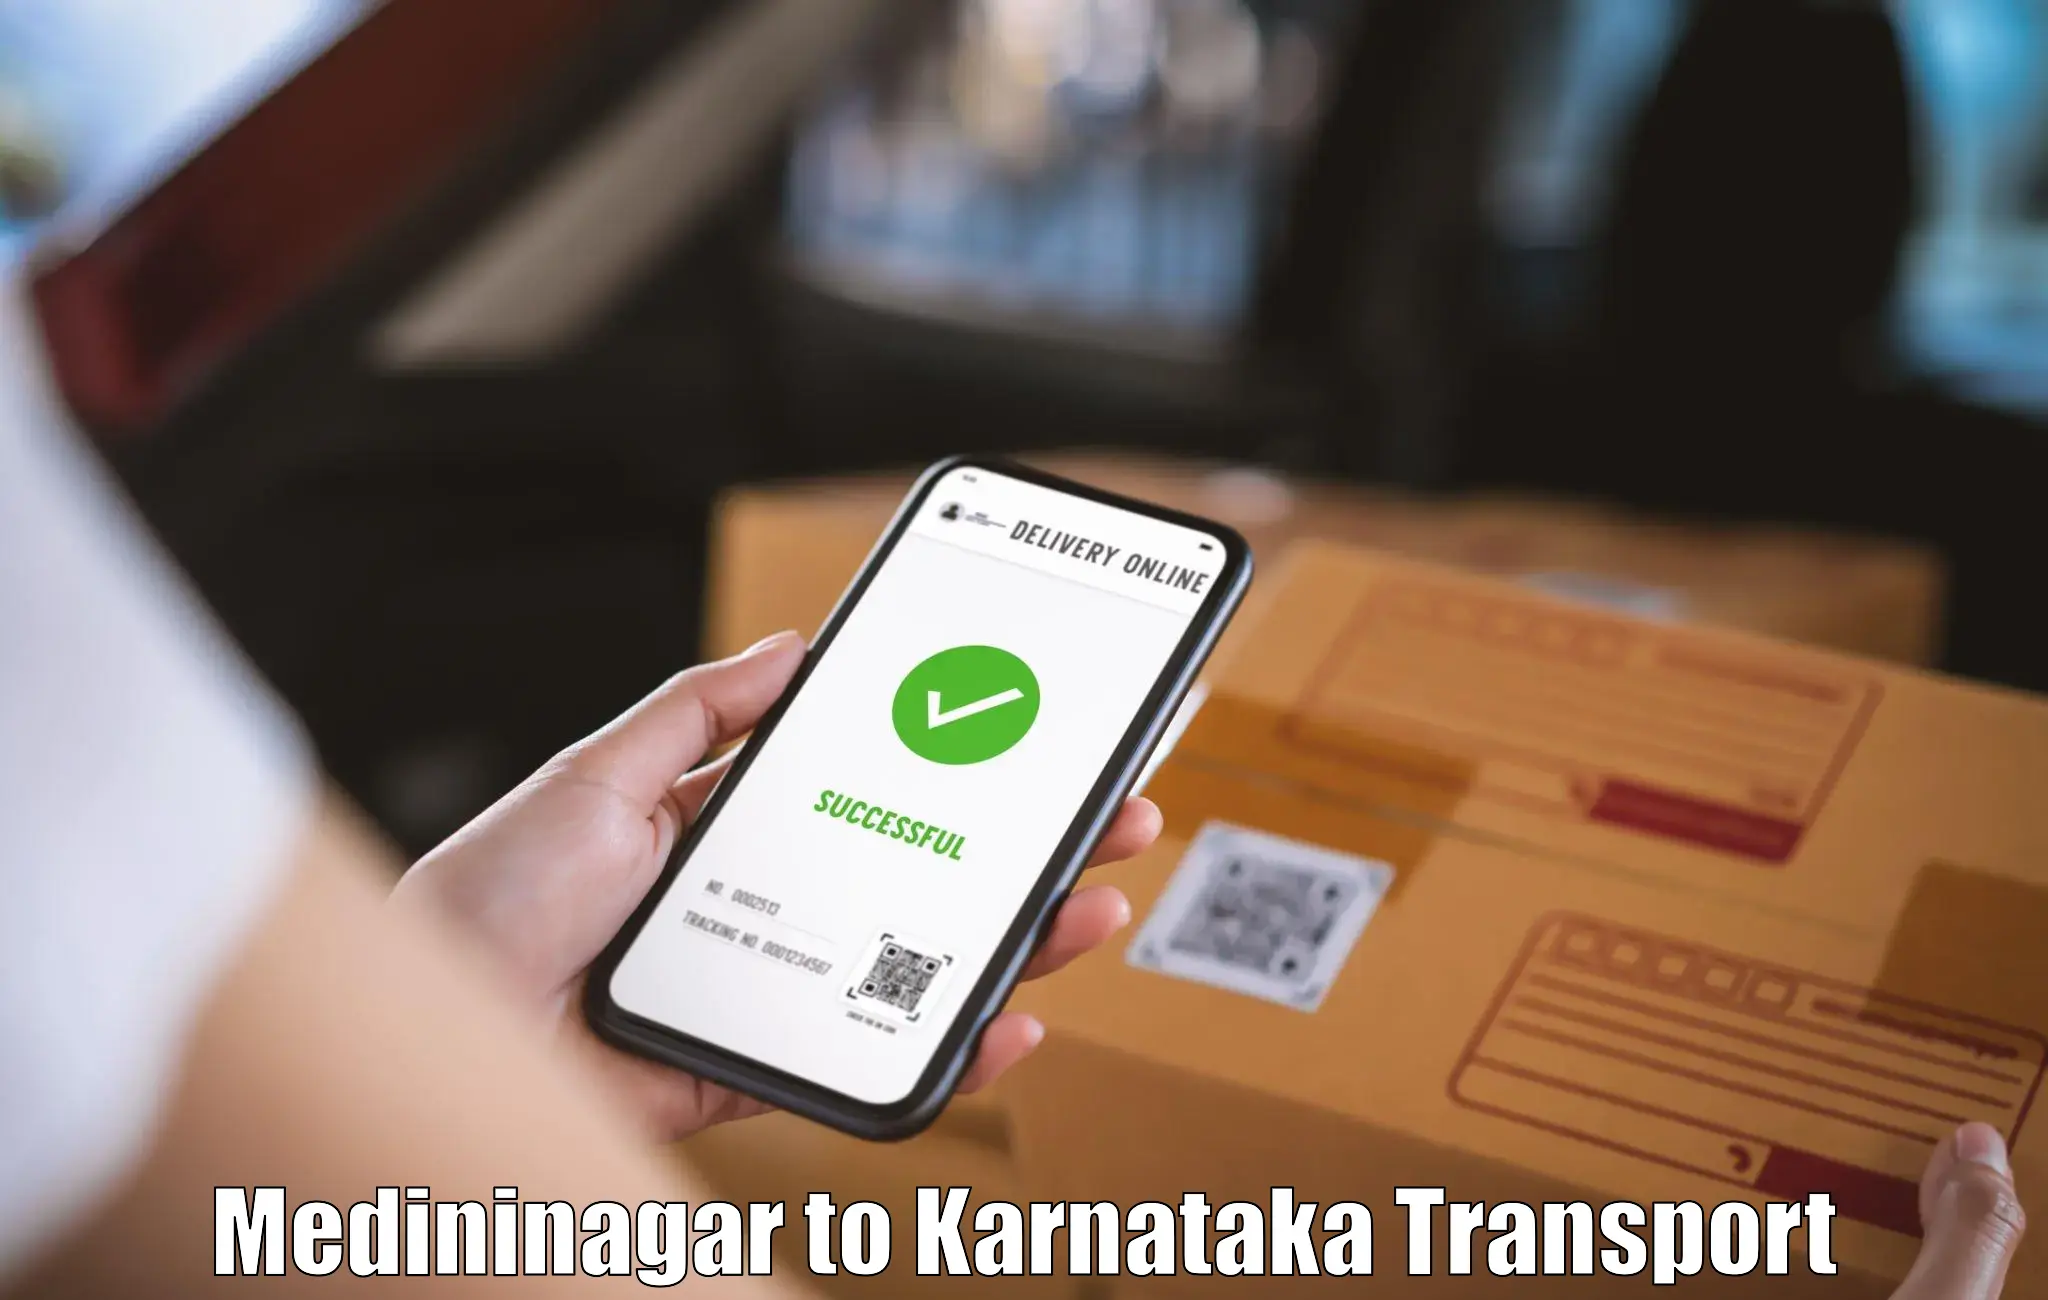 Transport in sharing Medininagar to Yadgiri